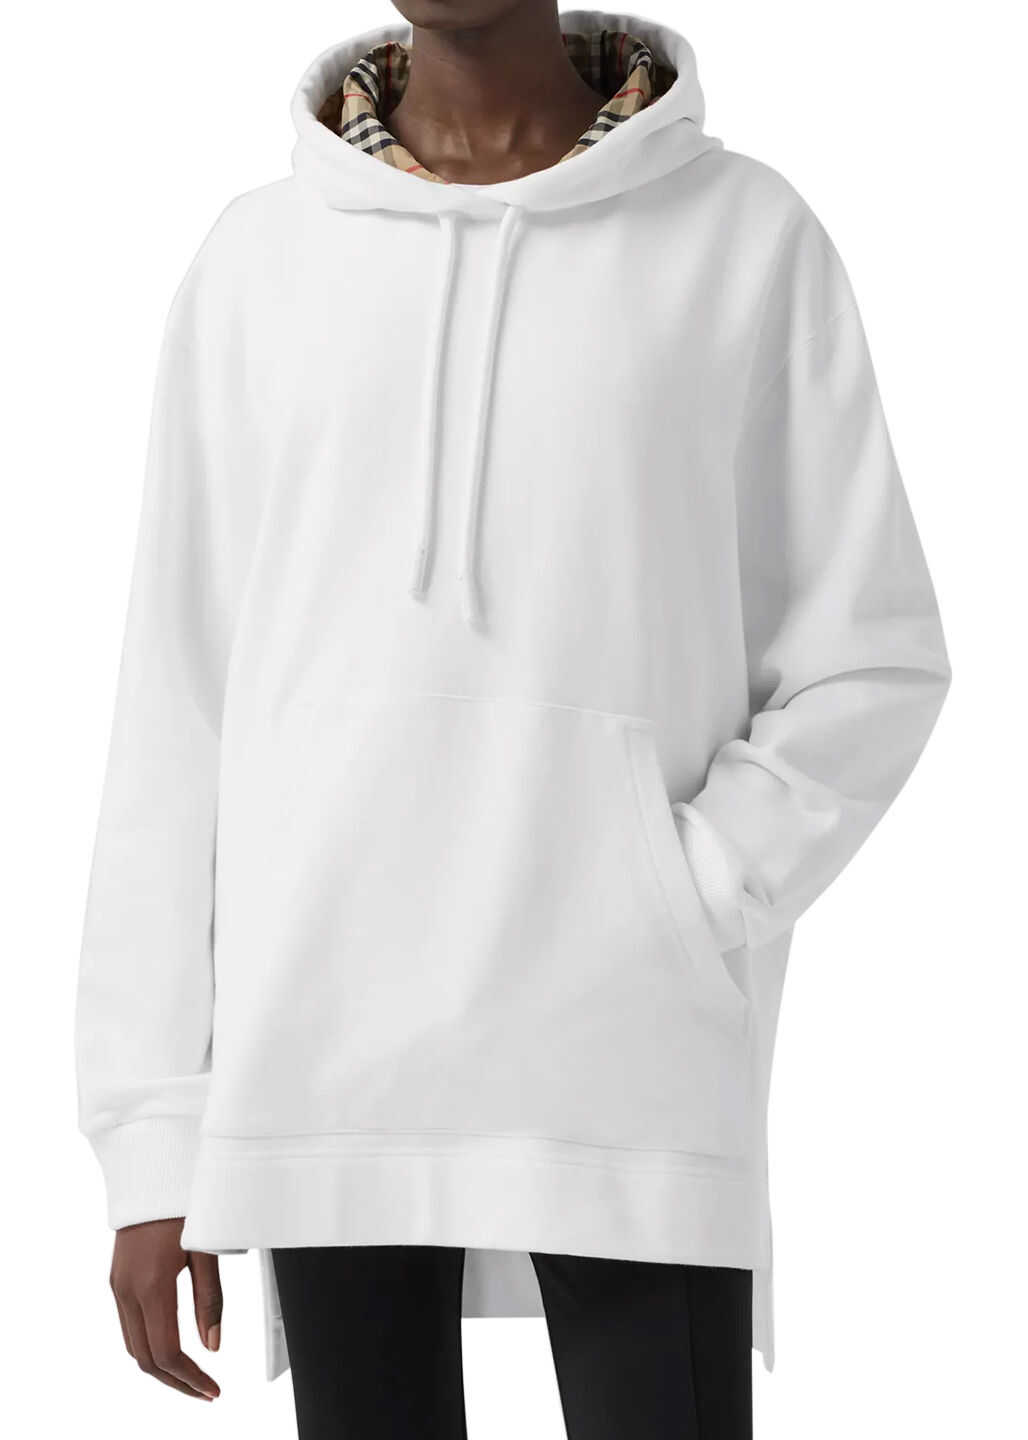 Burberry Over Sweatshirt White